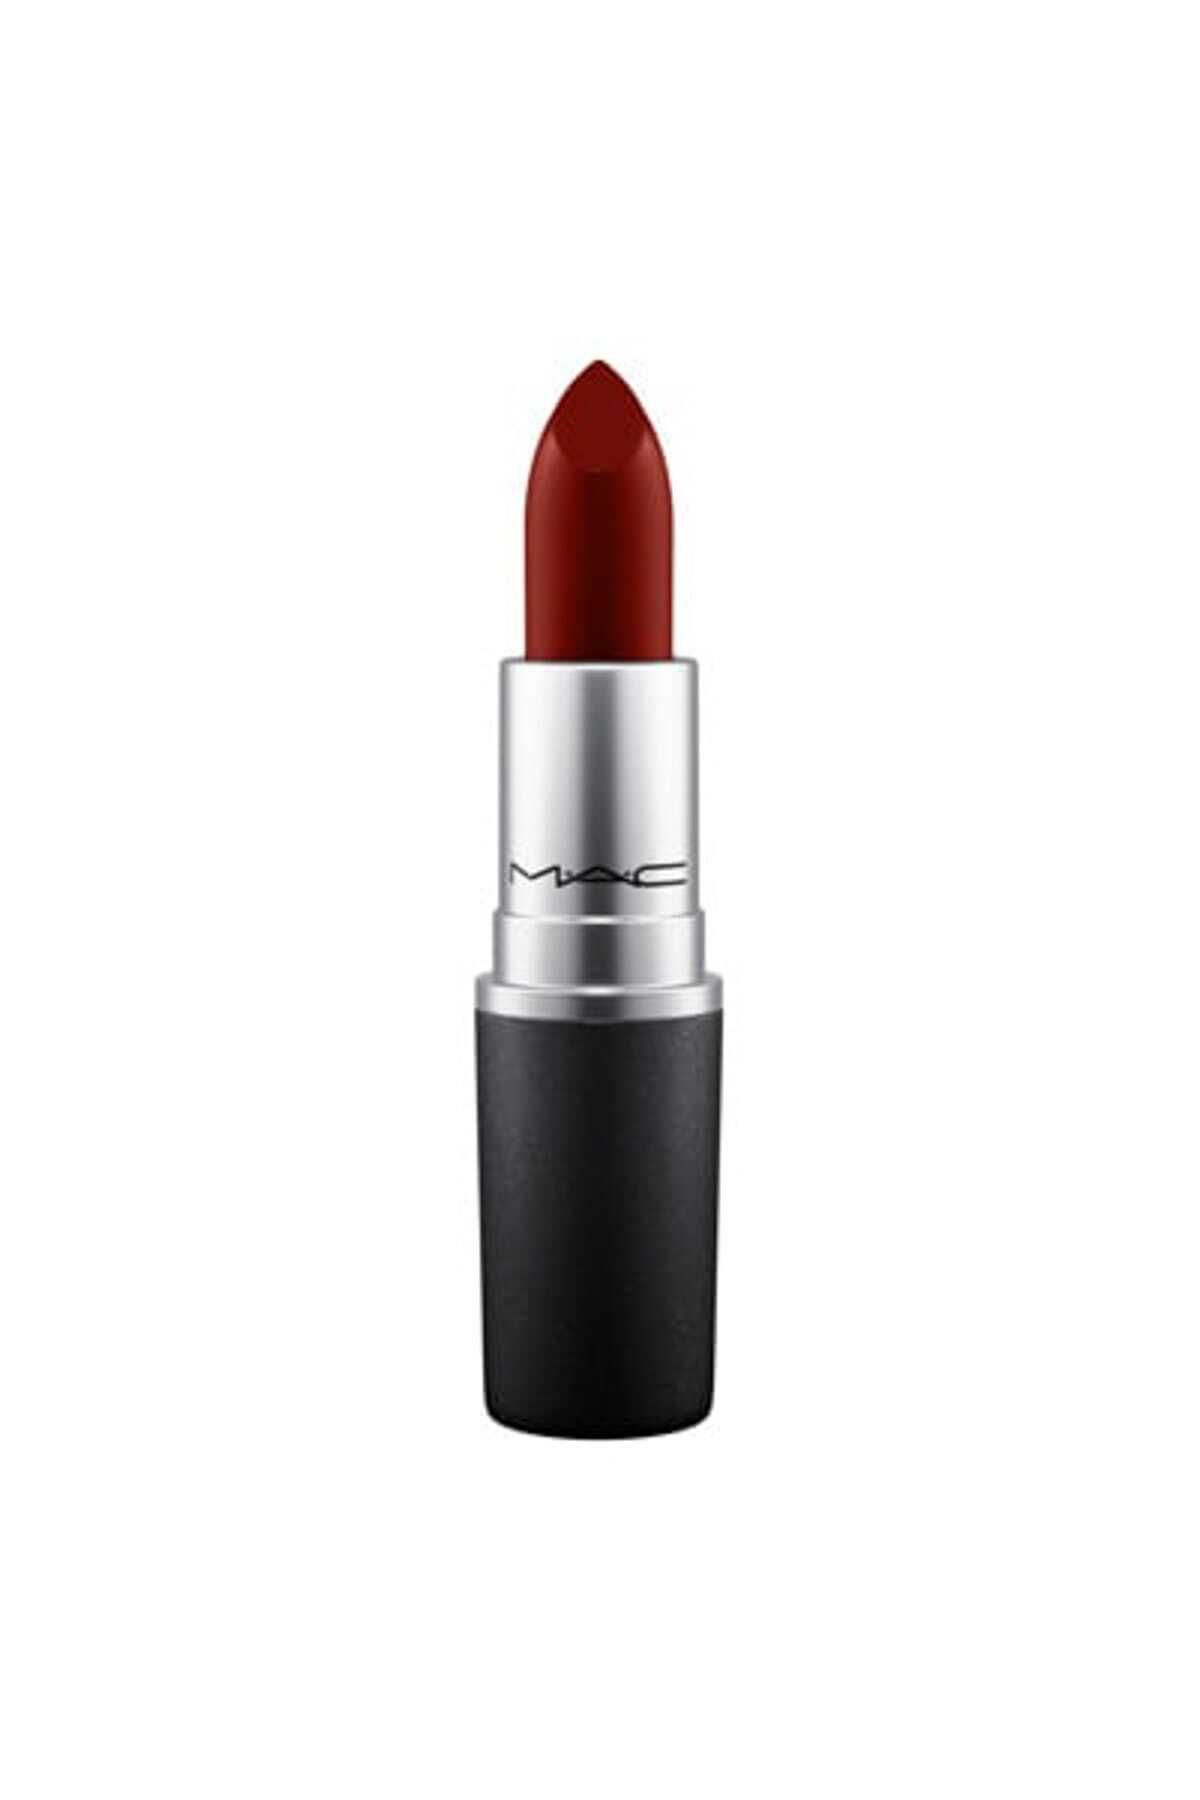 Mac Ruj - Lipstick Double Fudge 3 g 773602559435